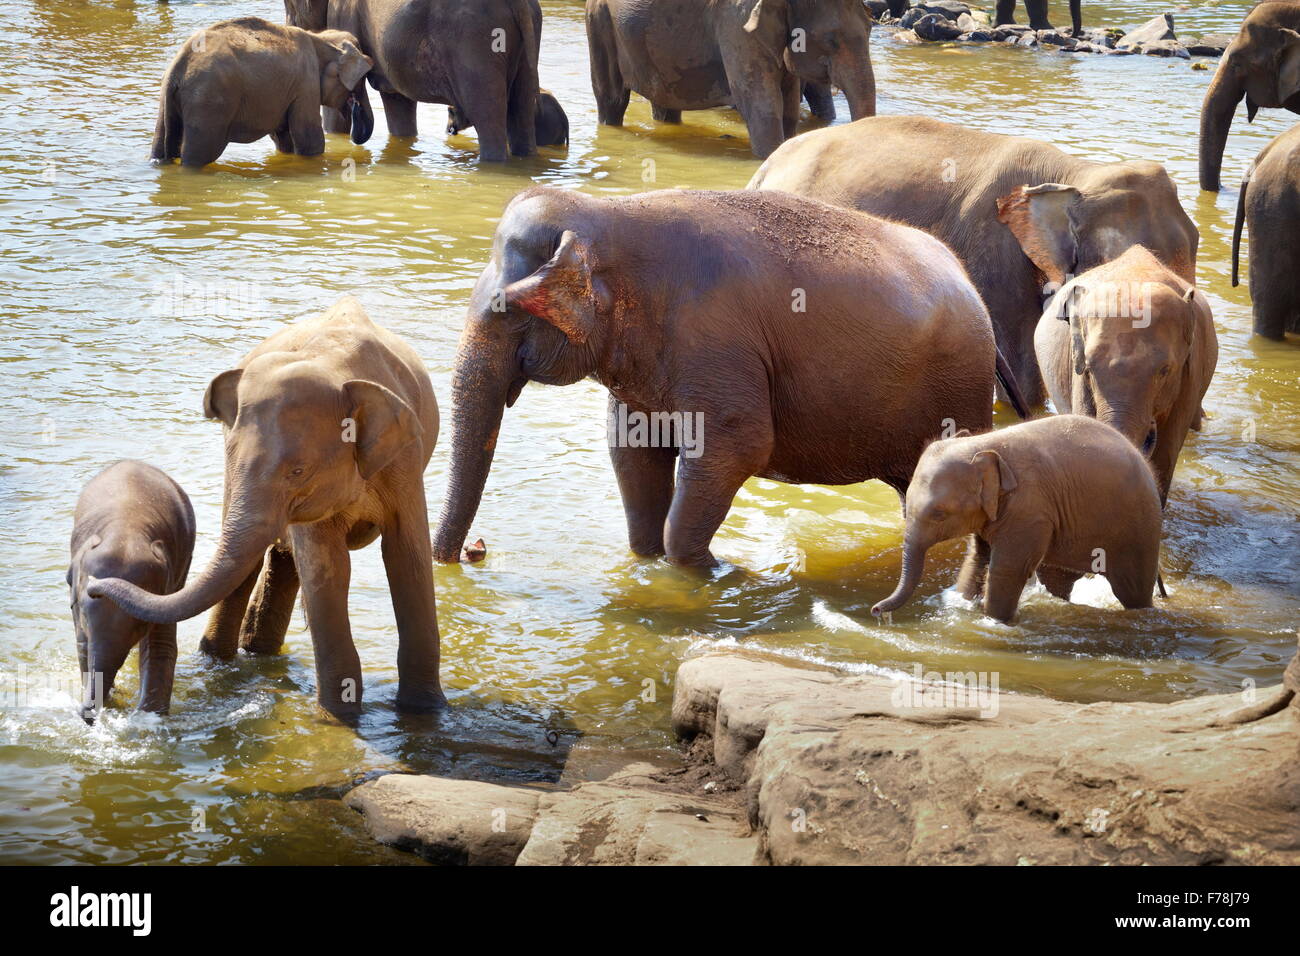 Elefanten in der Badewanne - Pinnawela Elefantenwaisenhaus für wilde asiatische Elefanten, Sri Lanka Stockfoto